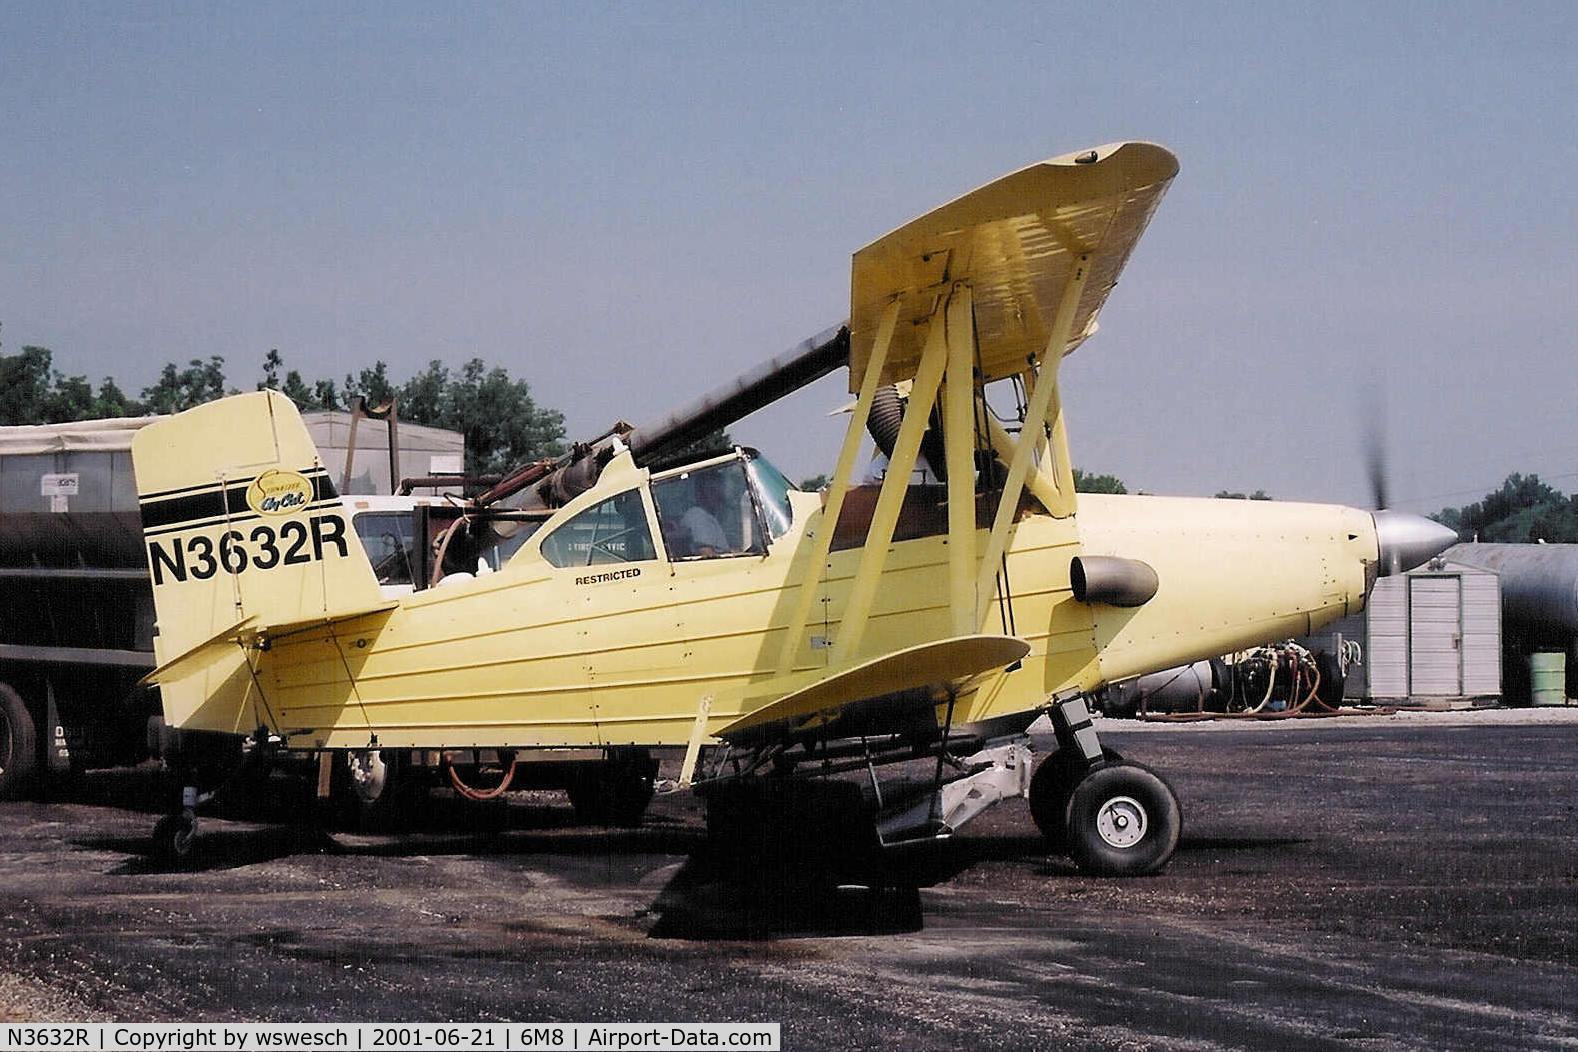 N3632R, 1985 Schweizer Aircraft Corp G-164B C/N 769B, #769B, with a -1 Garrett.  Lepanto Crop Service